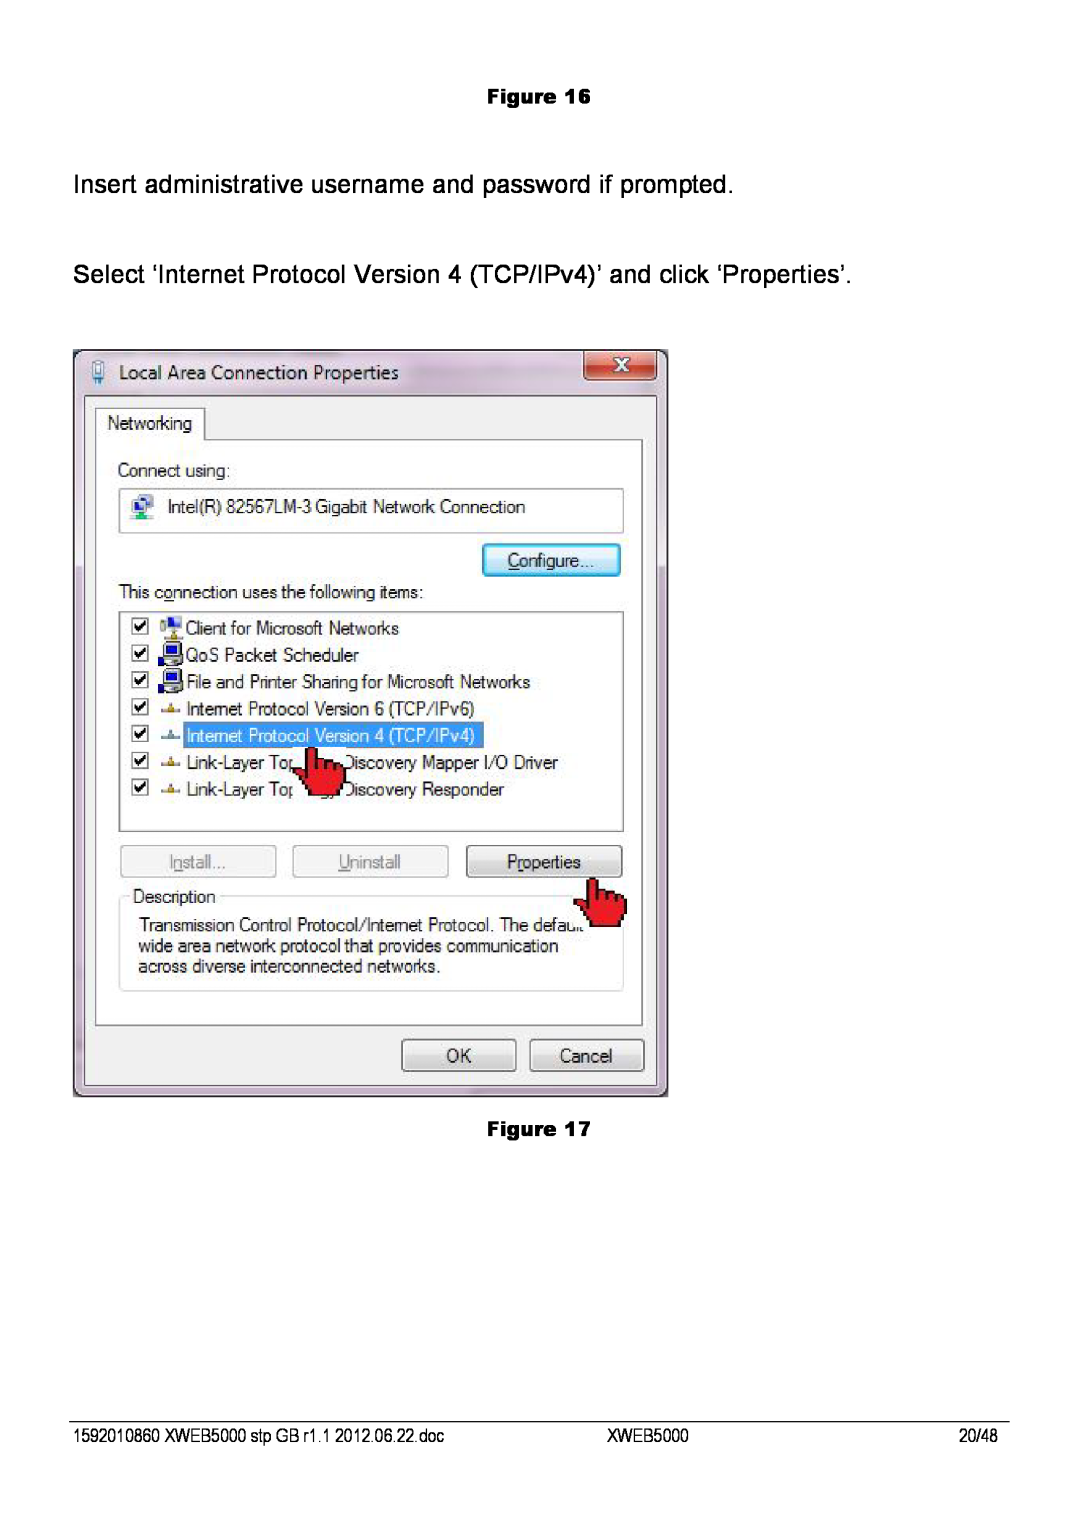 Emerson manual XWEB5000 stp GB r1.1 2012.06.22.doc, 20/48 